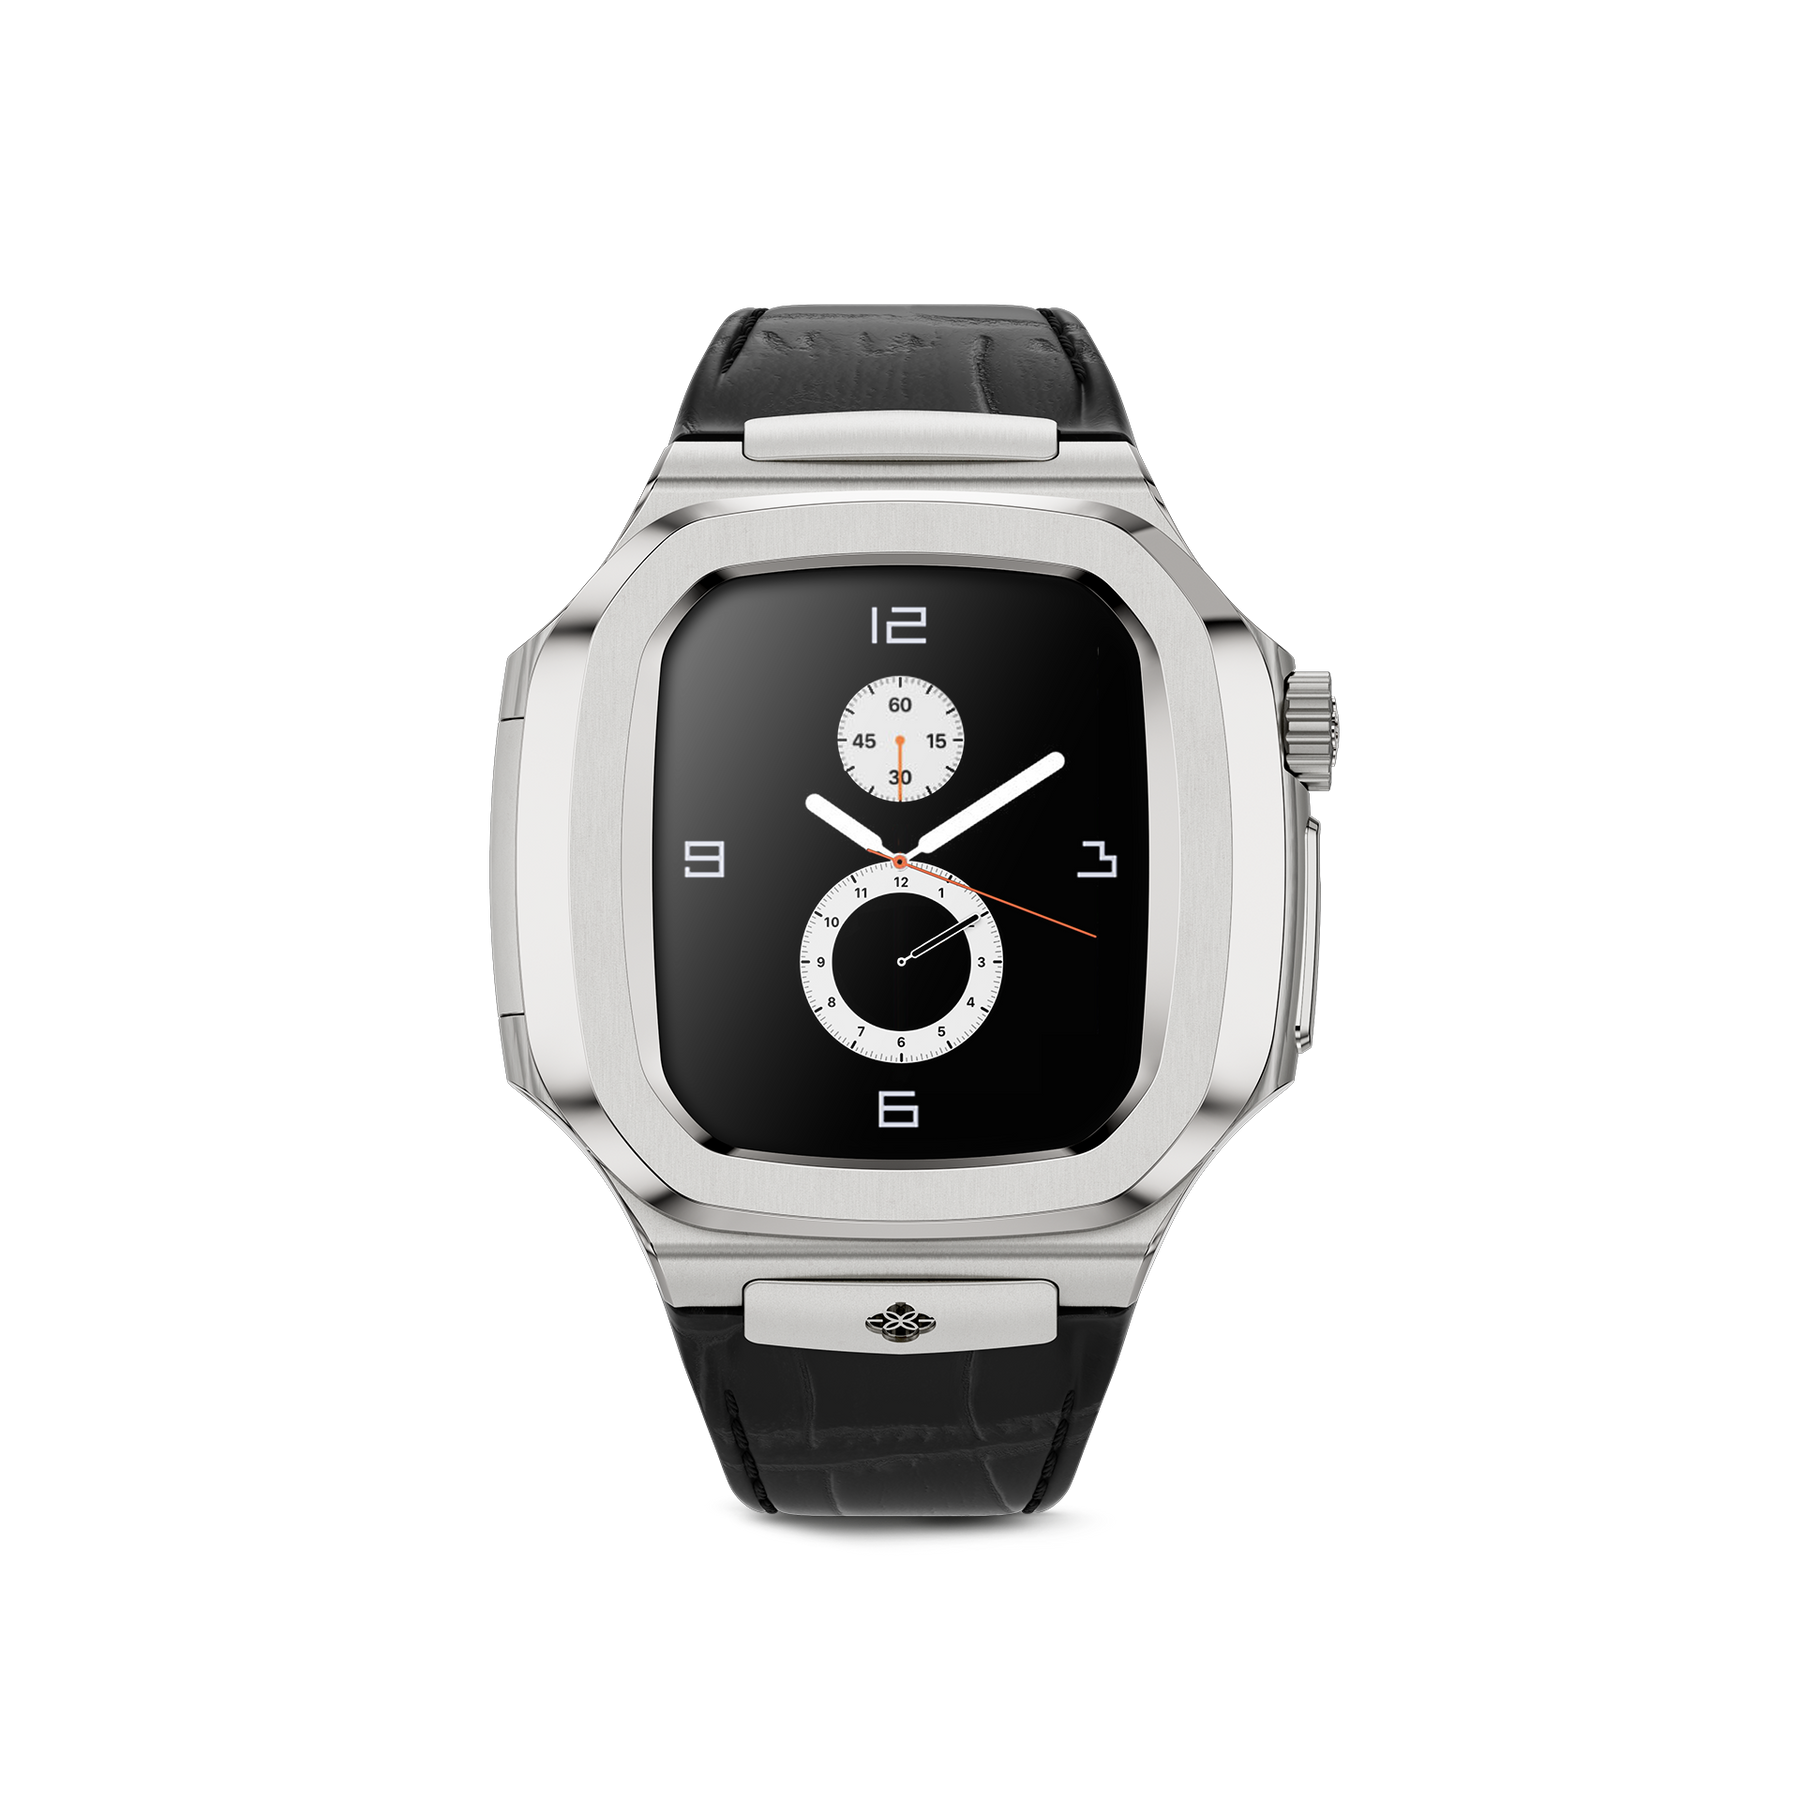 Apple Watch Case ROL41/45 - Silver